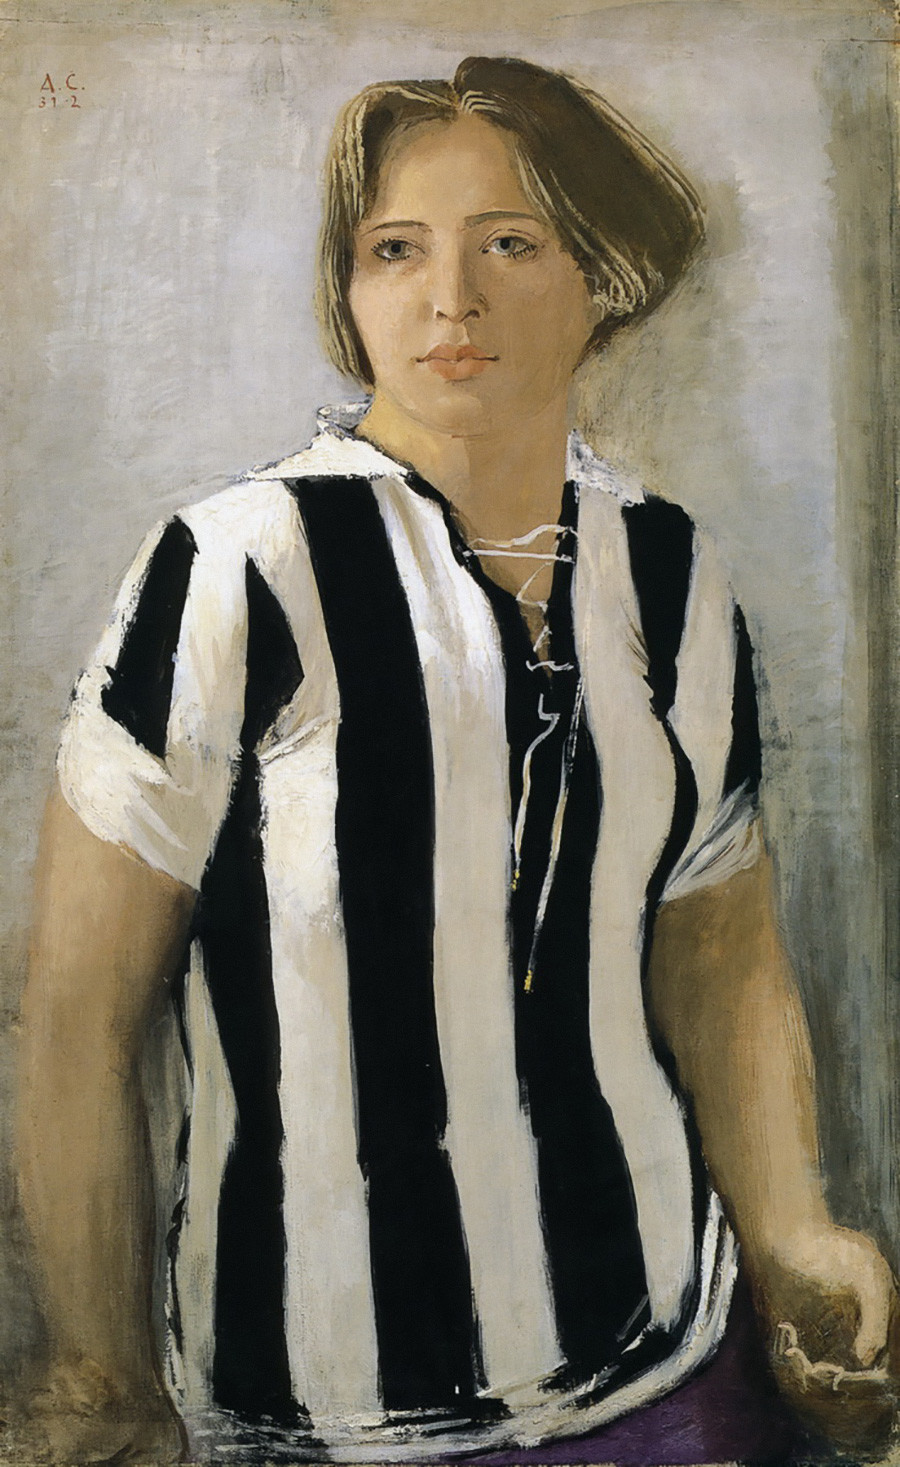 『Tシャツを着ている女性』、アレクサンドル・サモフヴァロフ作、1932年